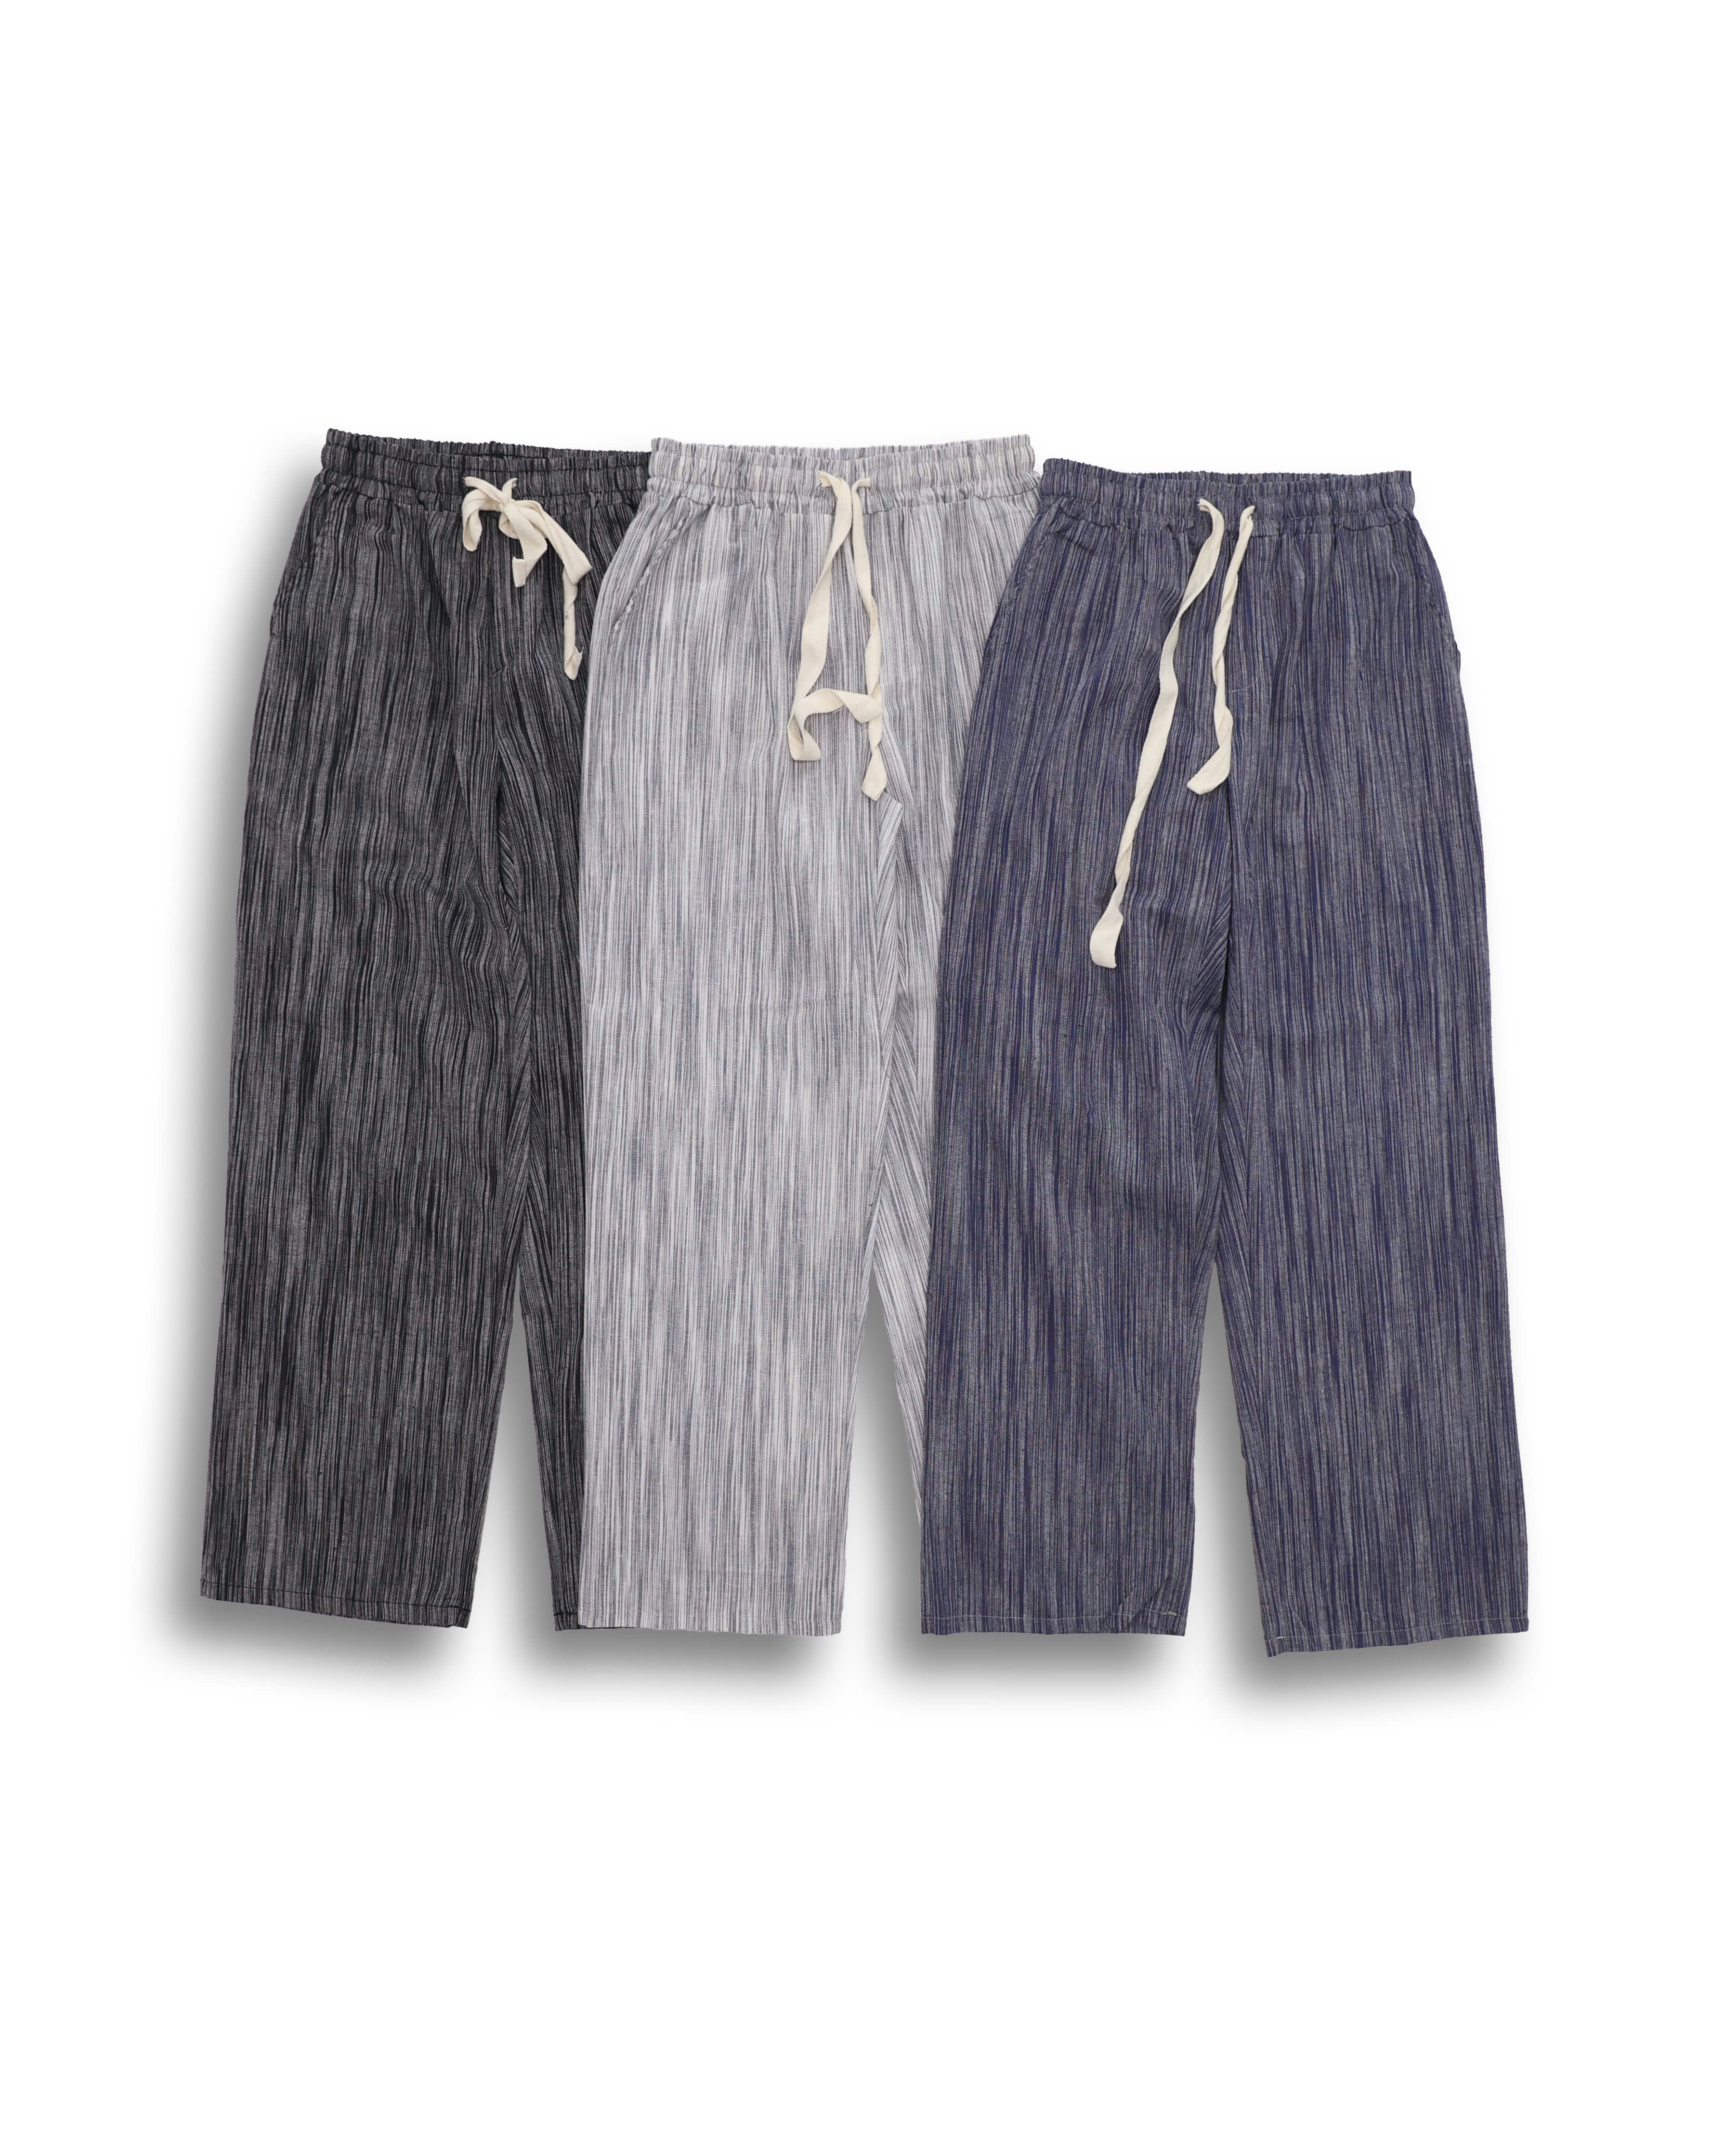 GROSS Linen Stripe Wide Pleats Pants (Black/Gray/Blue) - 7차 리오더 (5/17 배송예정)